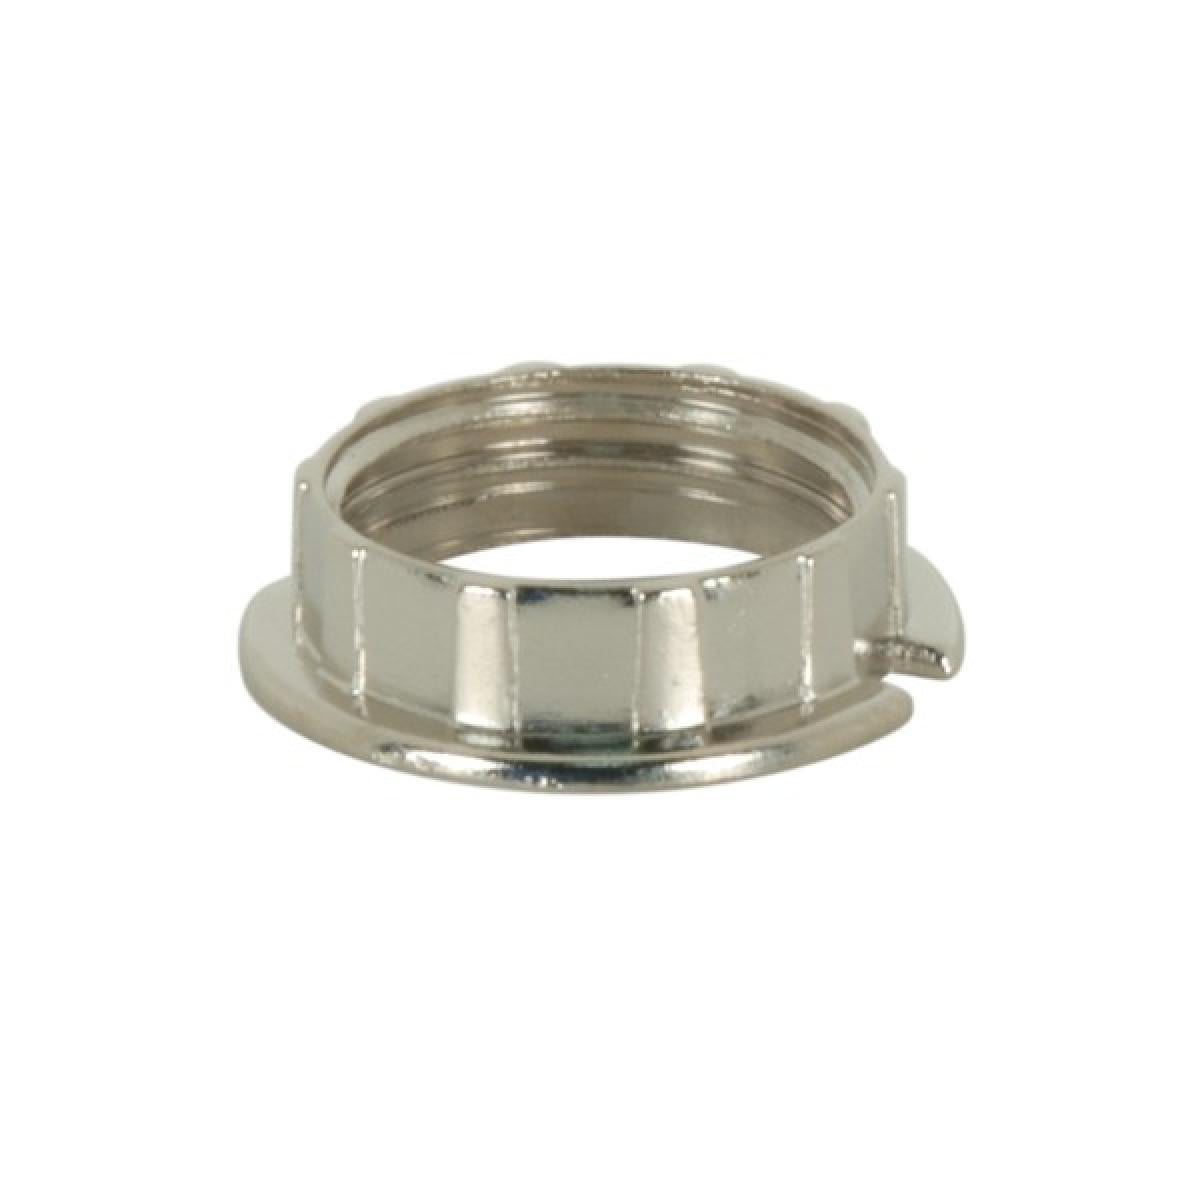 Satco 80-1583 Chrome Ring For Tubular Glass 3/4" Inner Diameter 1-1/6" Outer Diameter